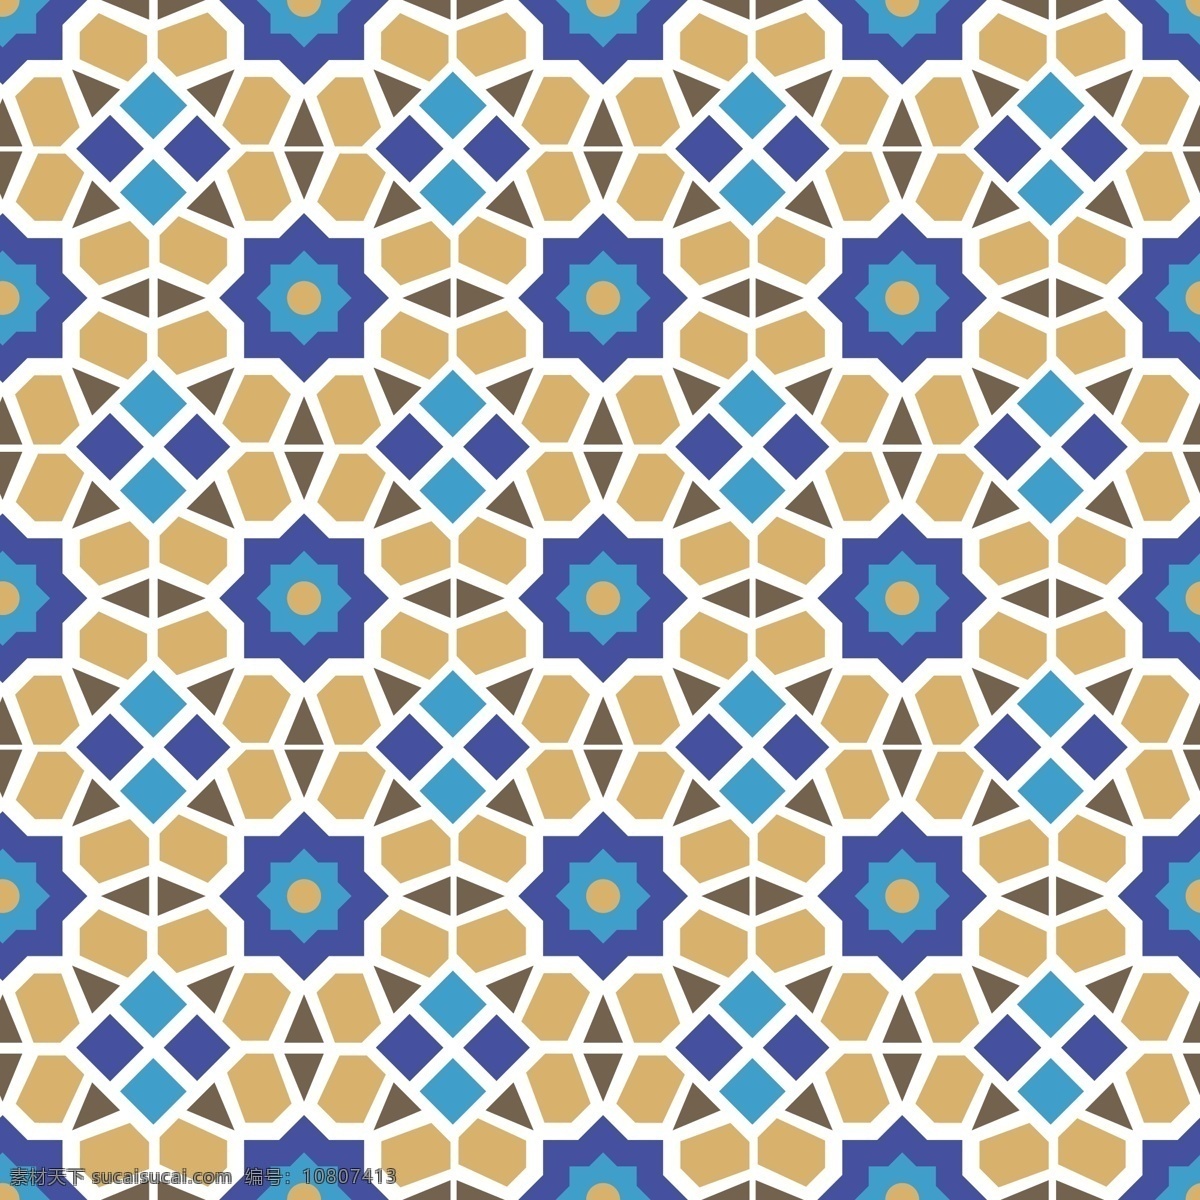 摩洛哥瓷砖 背景 重复 瓷砖 图案 黄色 蓝色 摩洛哥 阿拉伯语 穆斯林